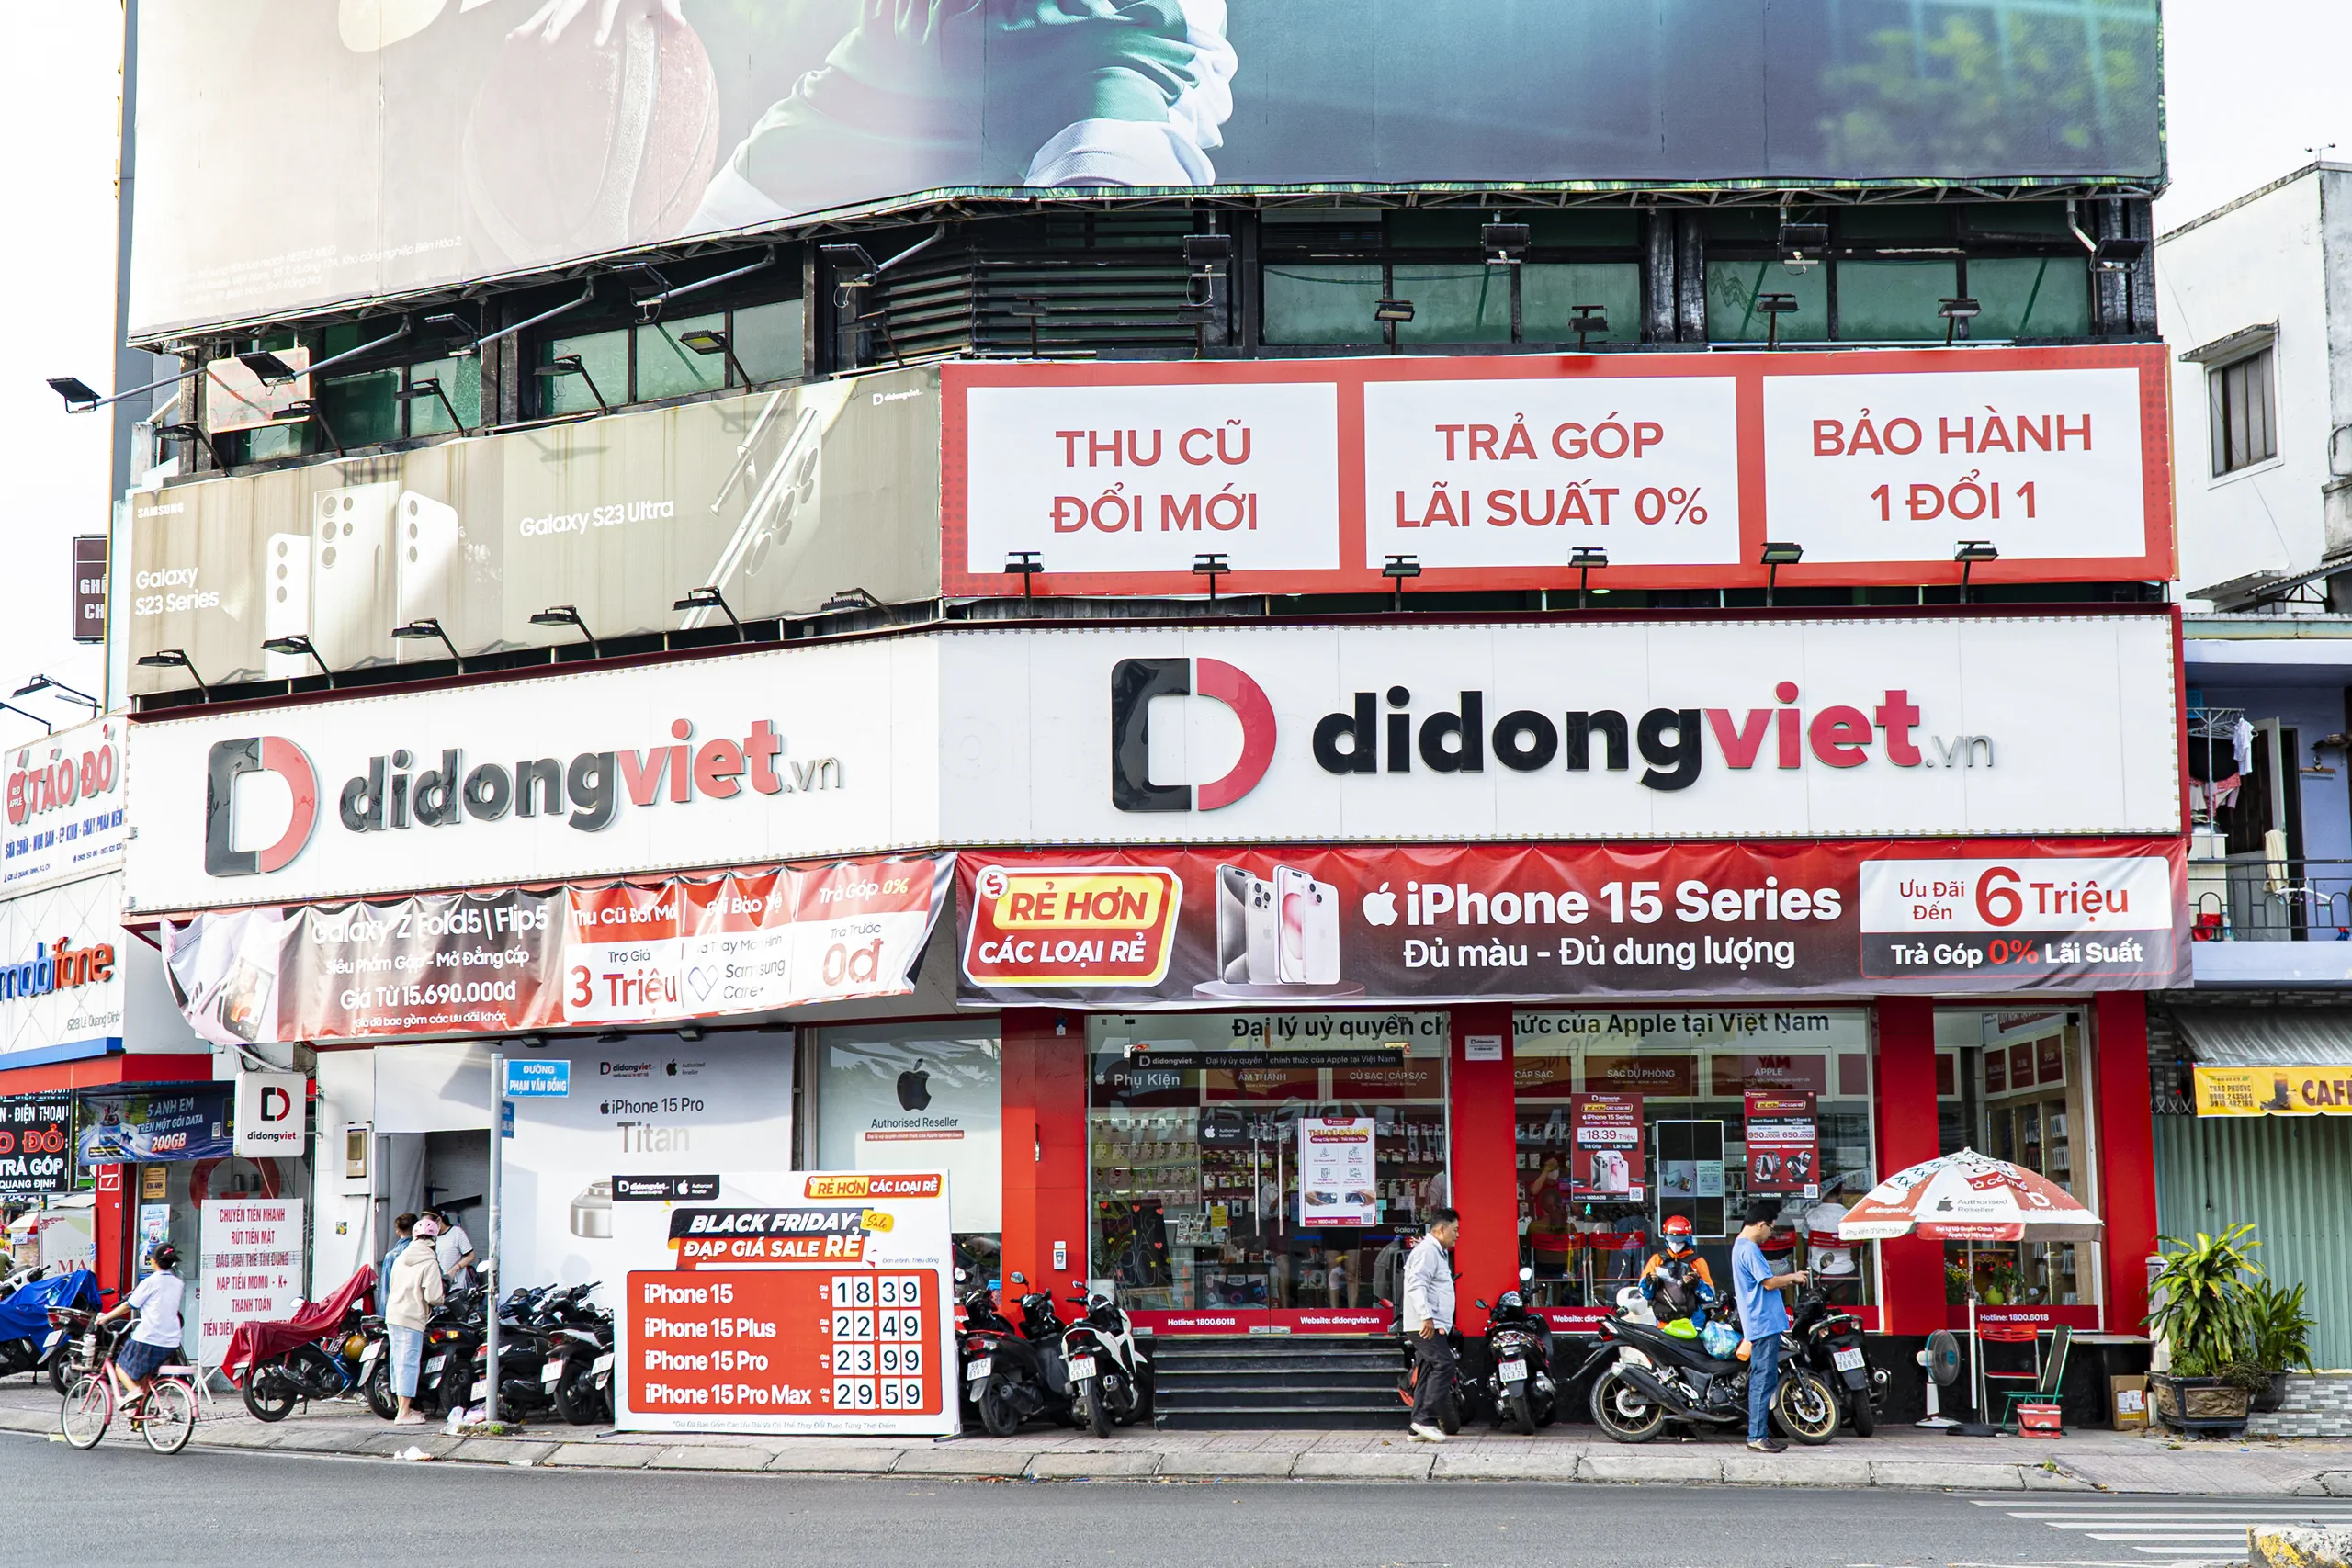 “Chỉ thở thôi”, Di Động Việt cũng liên tục tăng trưởng doanh số